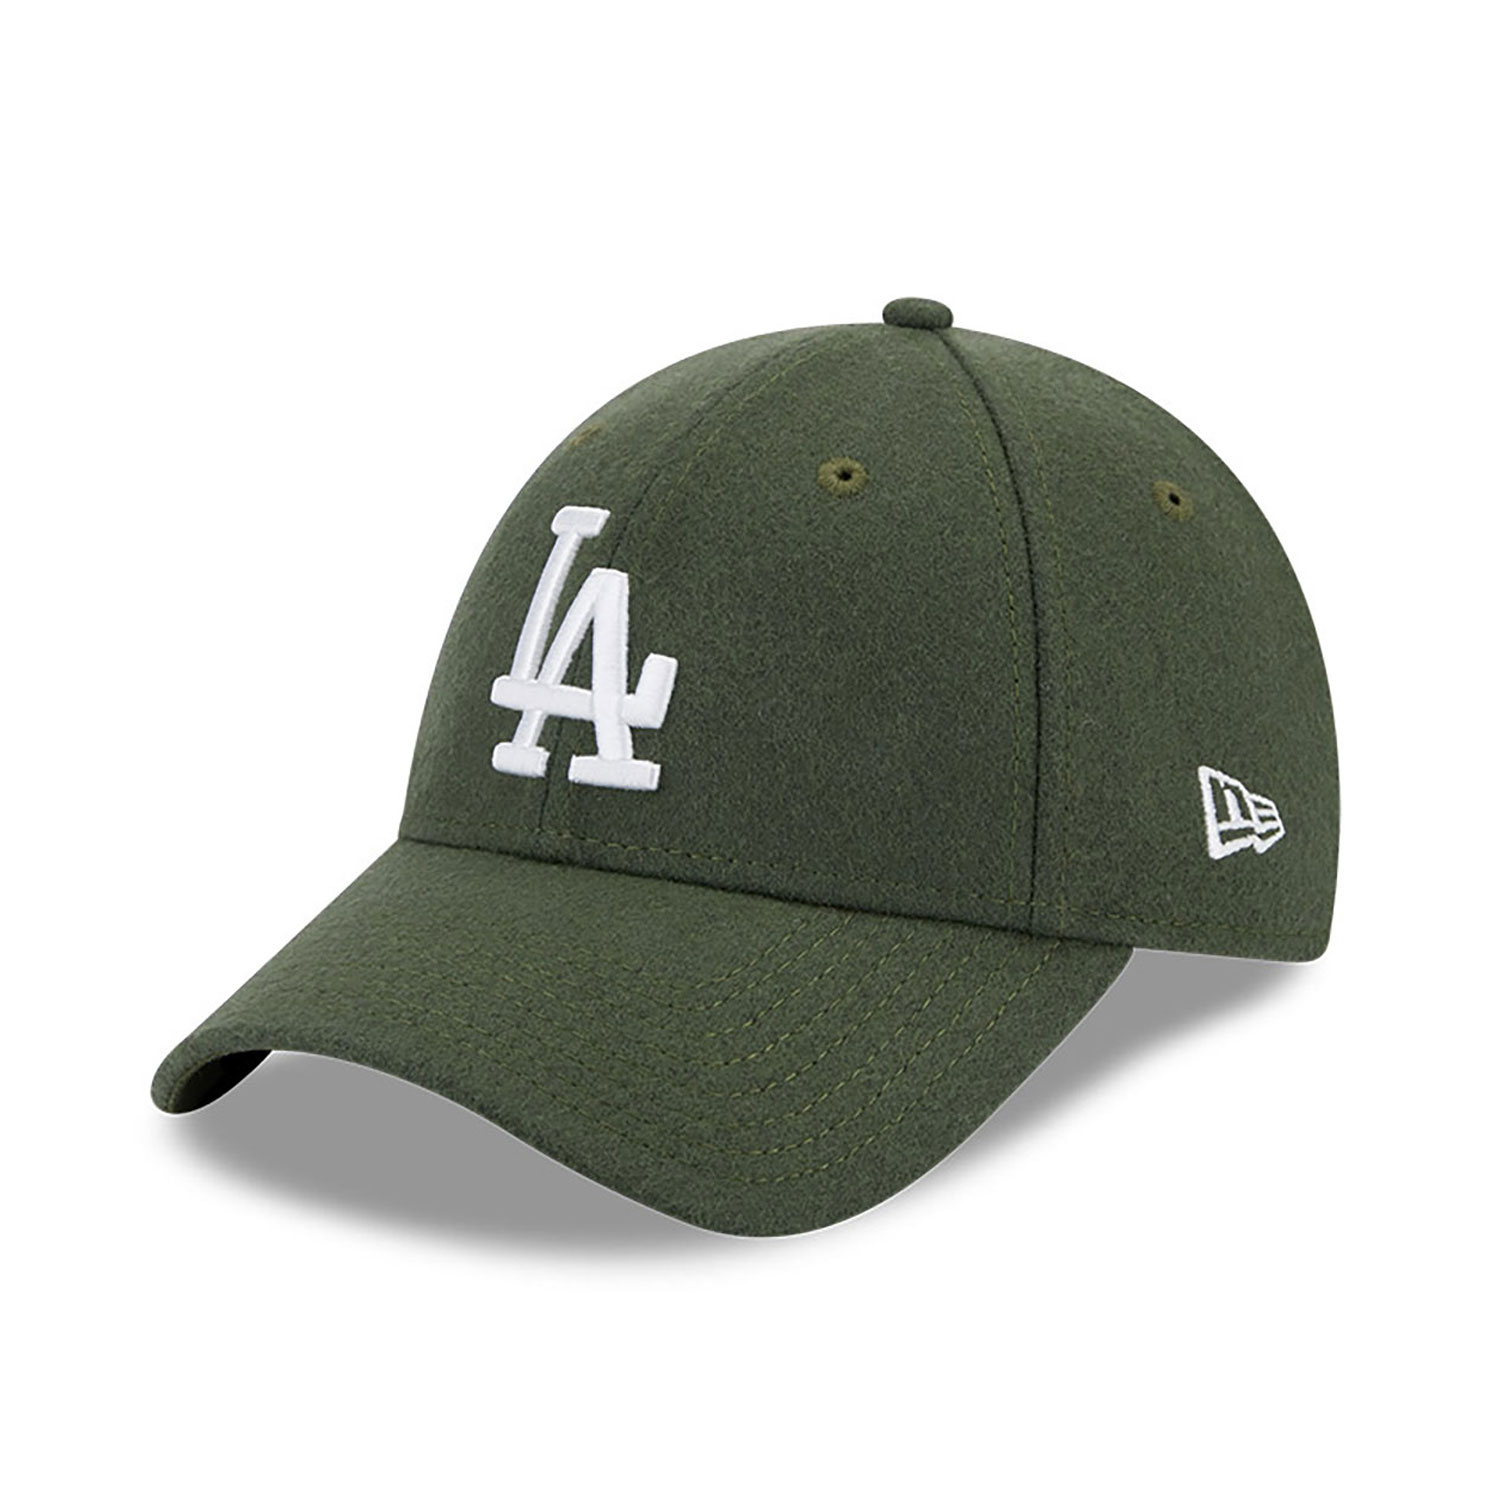 LA Dodgers Caps, Hats & Clothing | New Era Cap UK